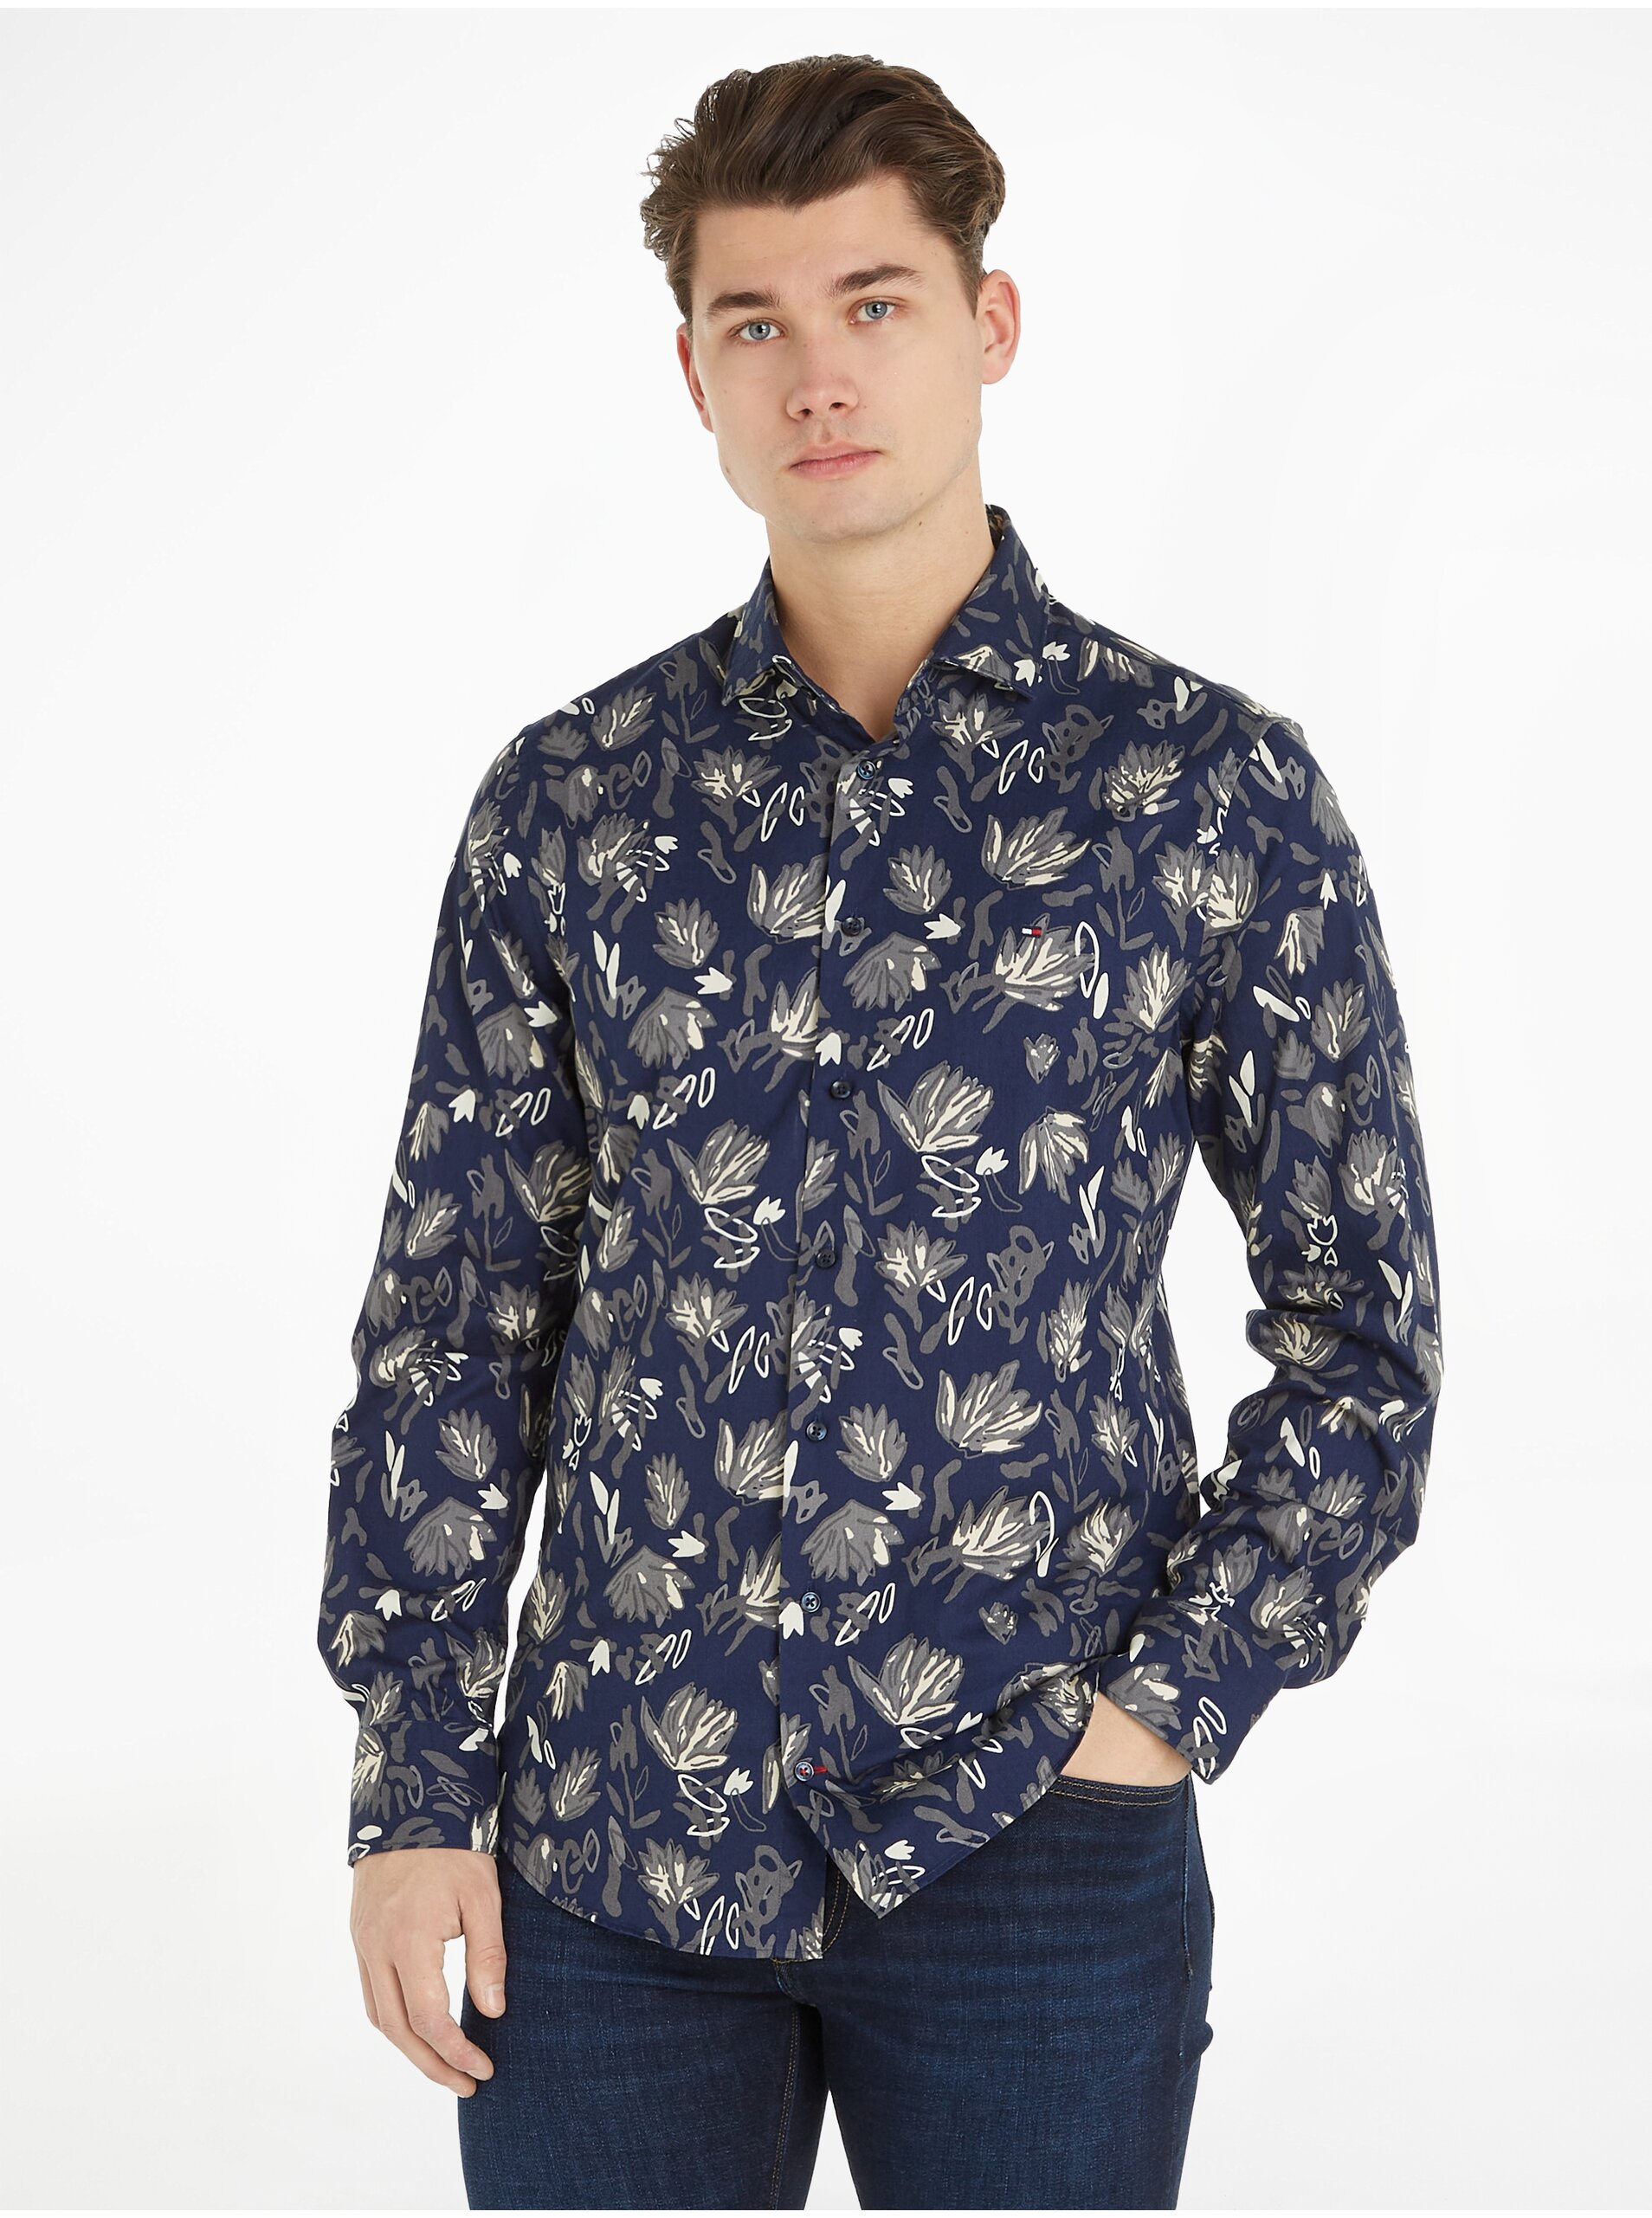 E-shop Tmavě modrá pánská vzorovaná košile Tommy Hilfiger Floral Print